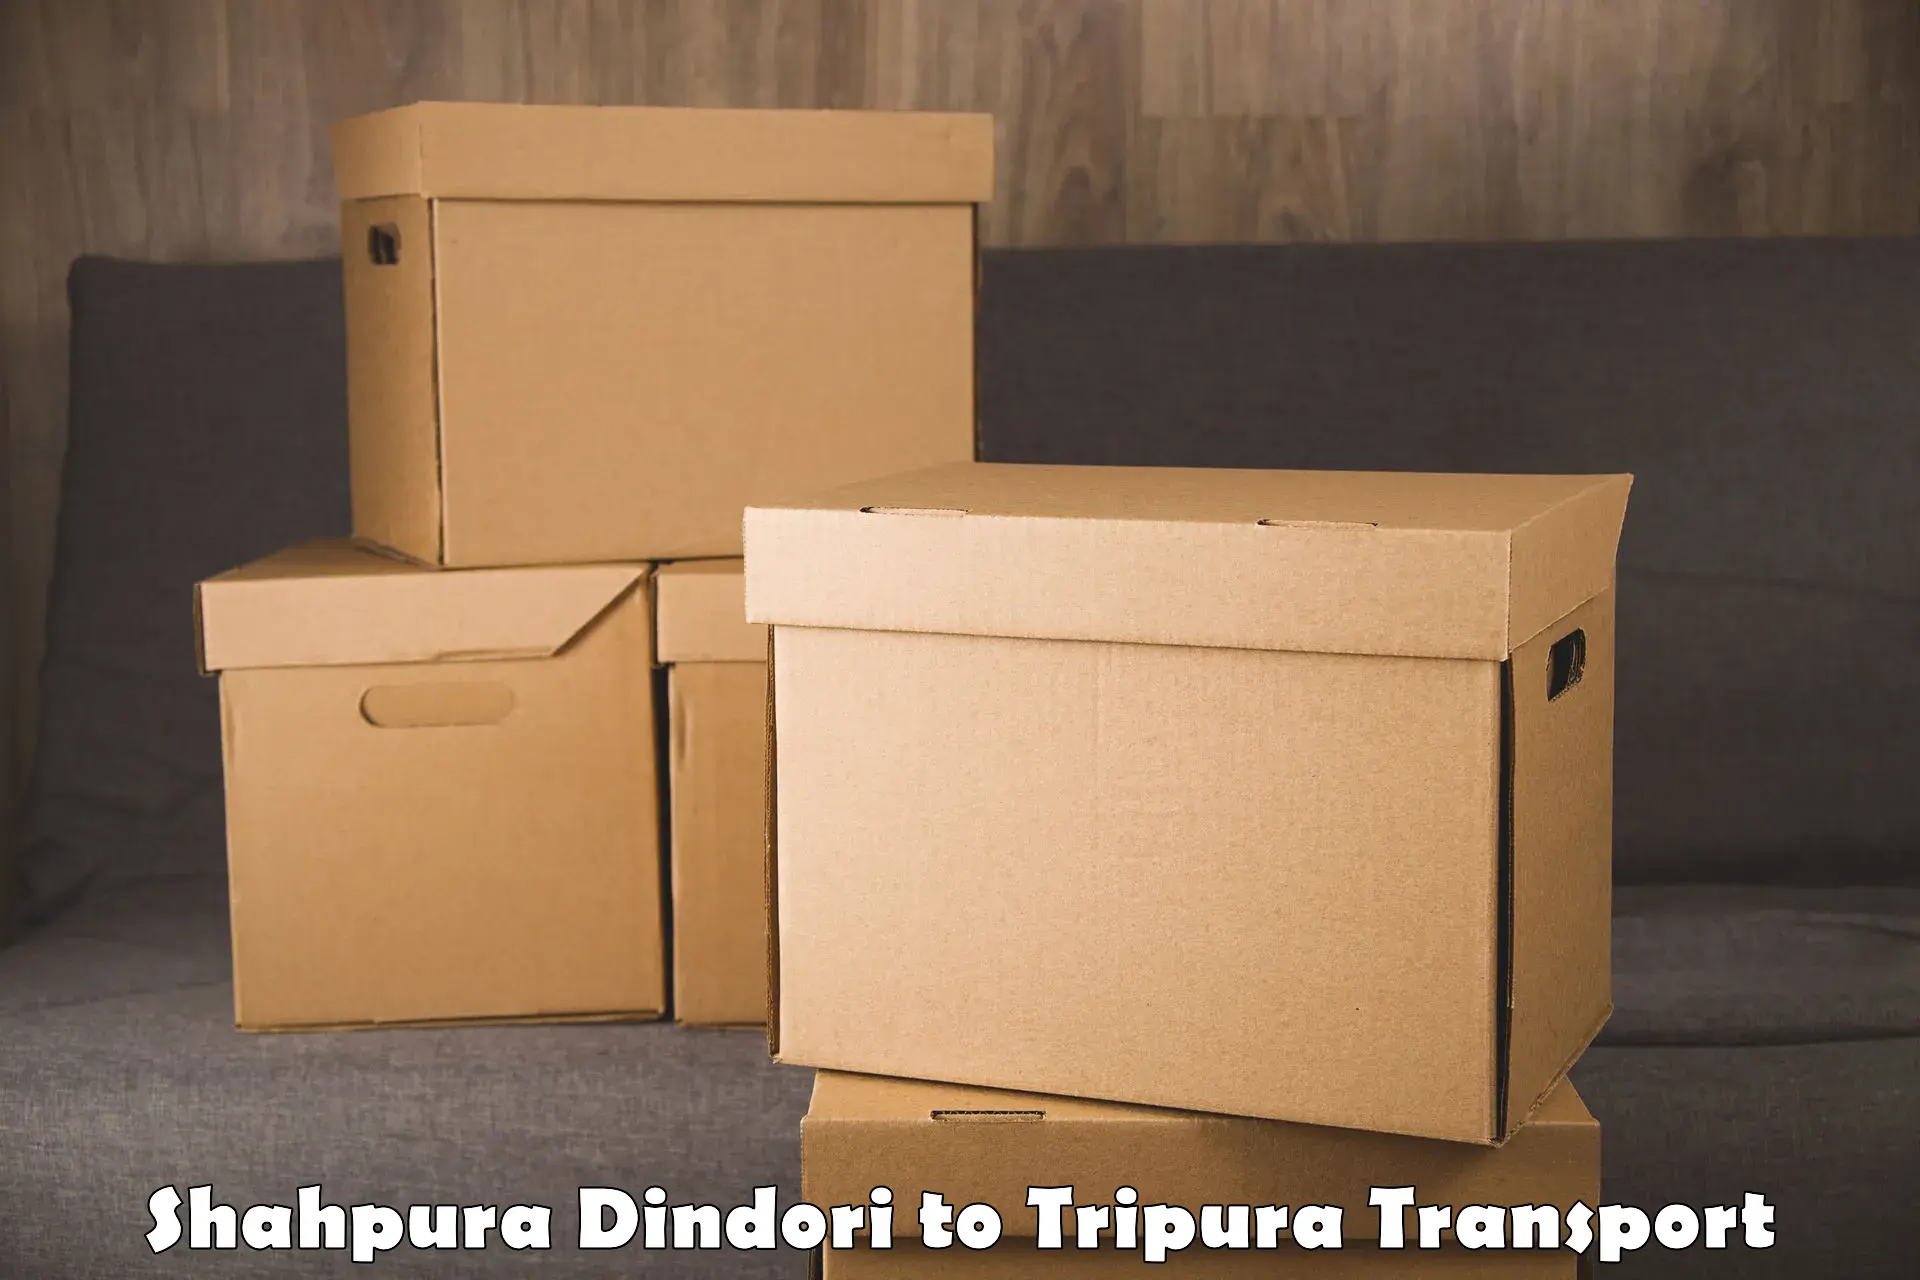 Truck transport companies in India Shahpura Dindori to Bishalgarh